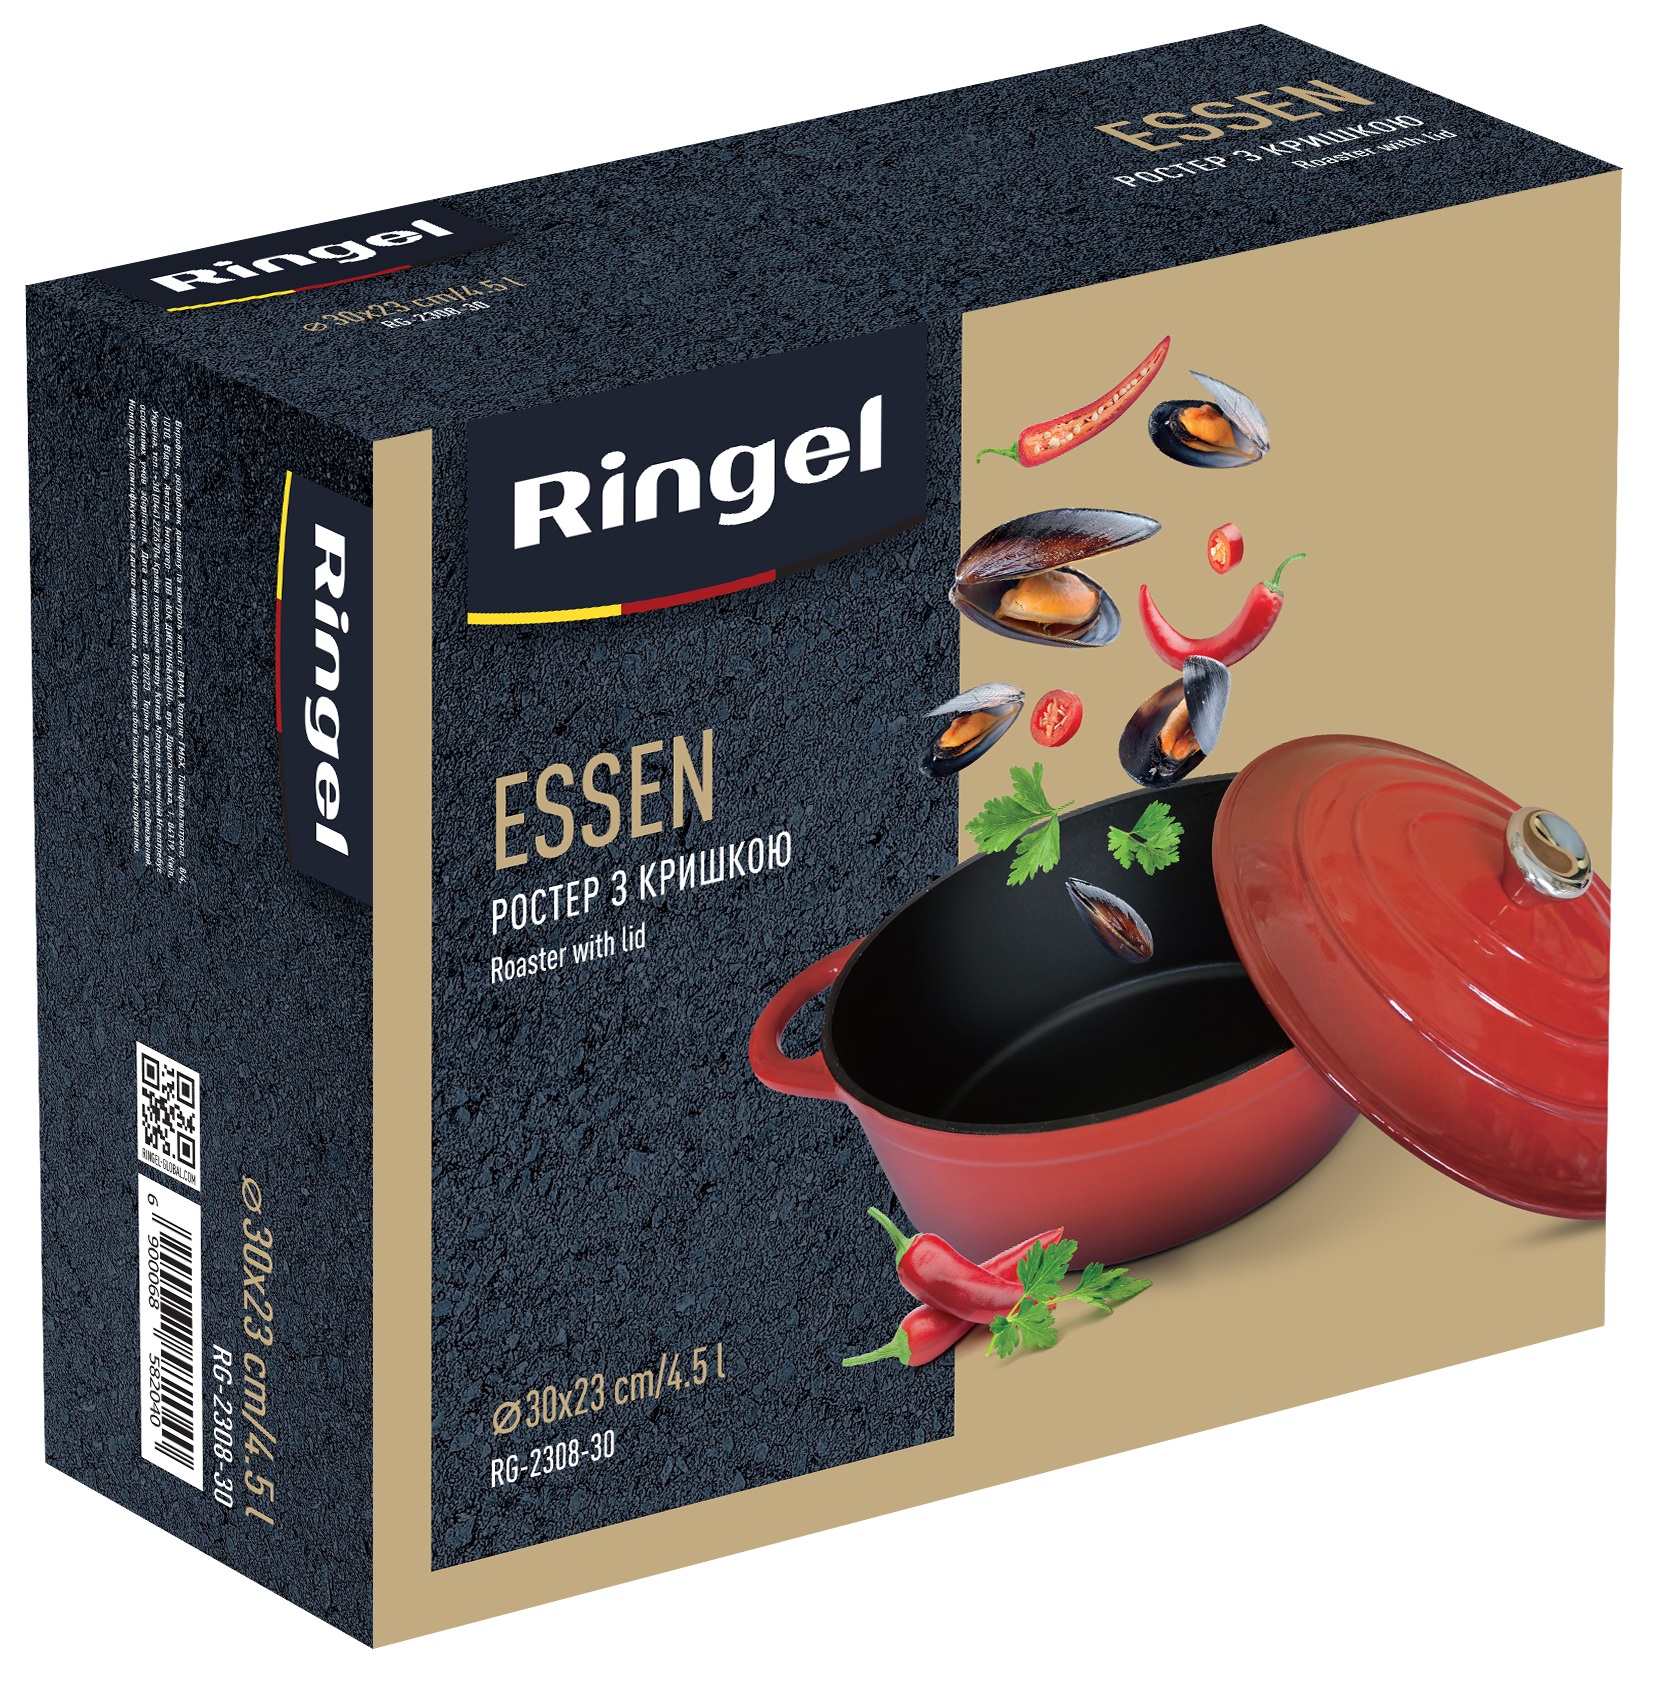 Гусятница Ростер RINGEL RG-2308-30 Essen 4.5 л в ассортименте